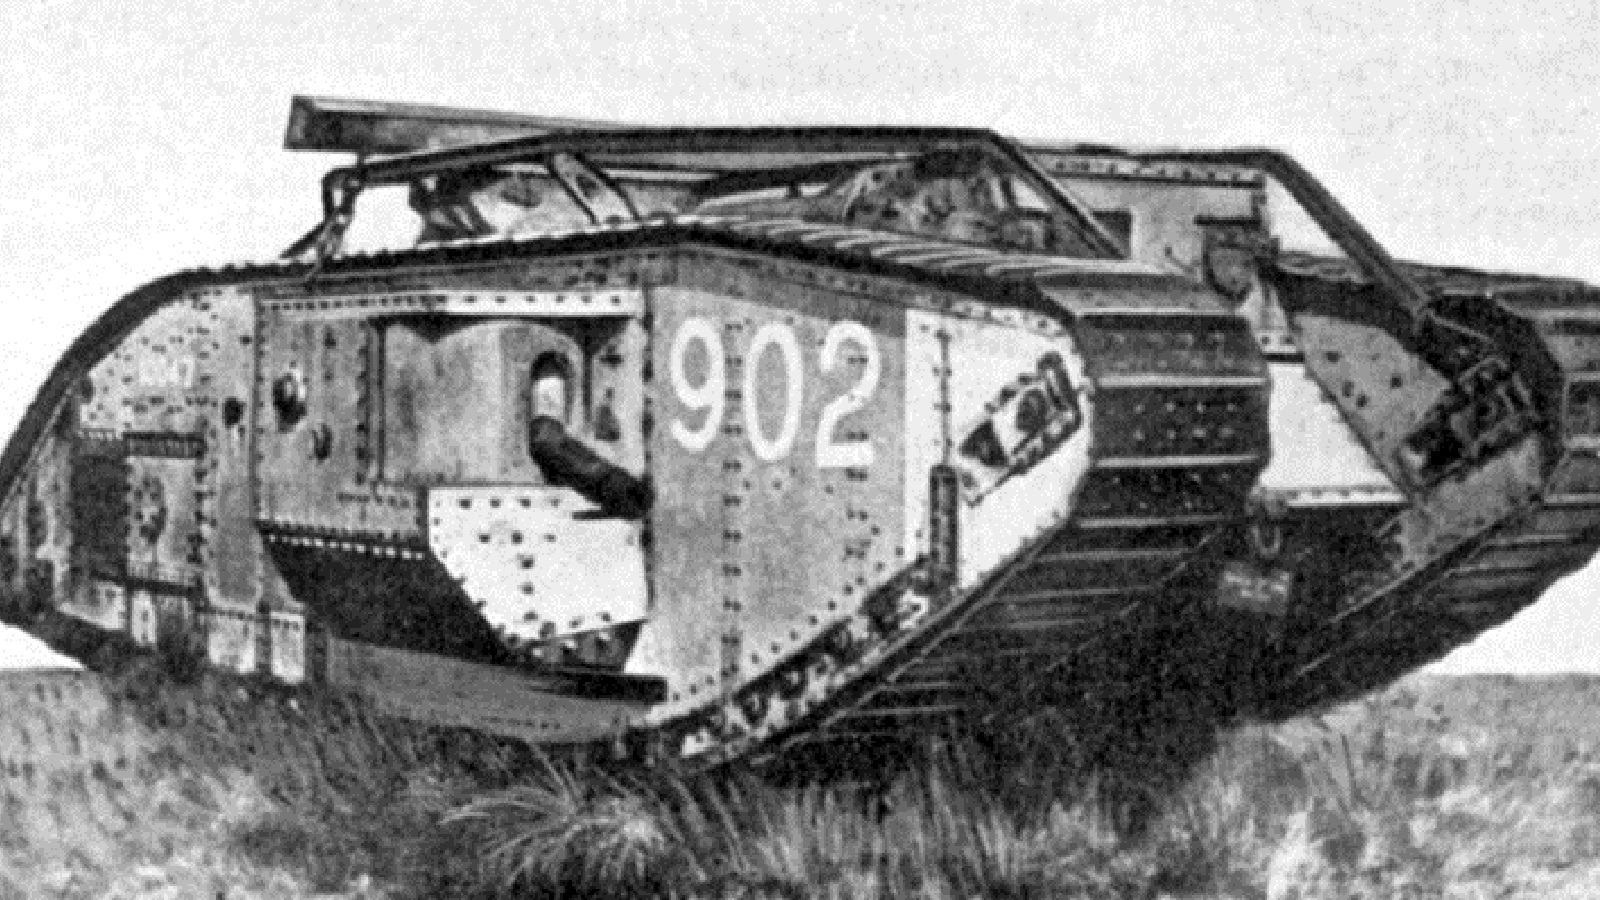 Mark 1 1916. Британский танк 1 мировой войны.